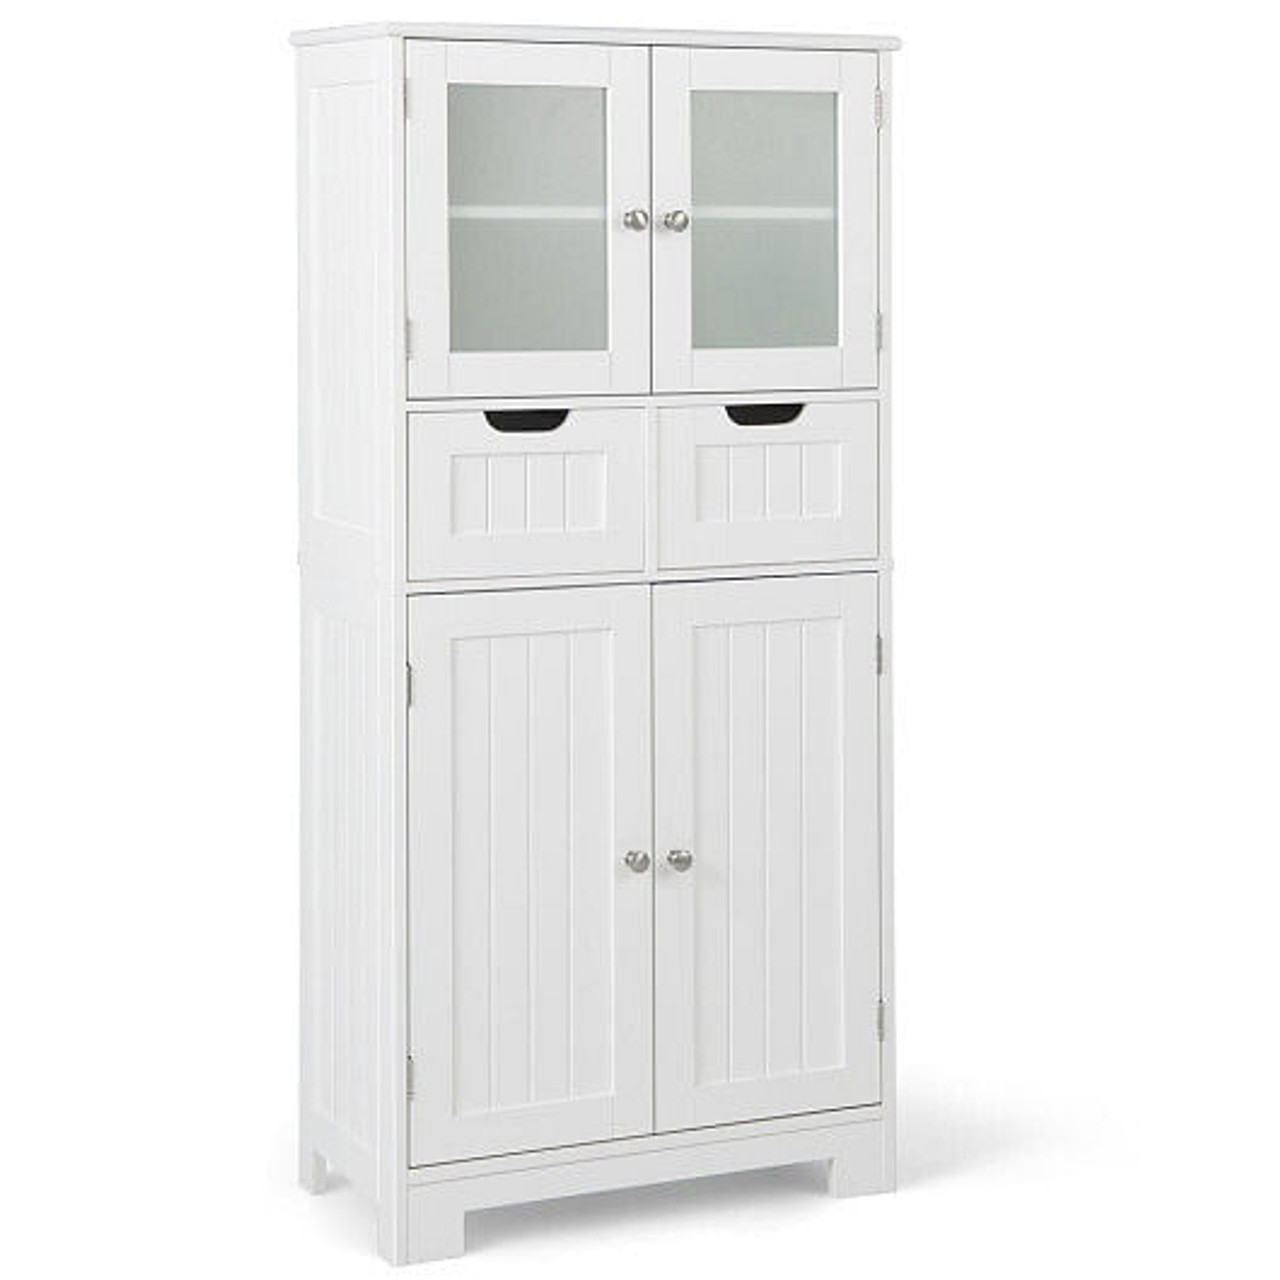 4 Door Freee-Standing Bathroom Cabinet with 2 Drawers and Glass Doors-Gray